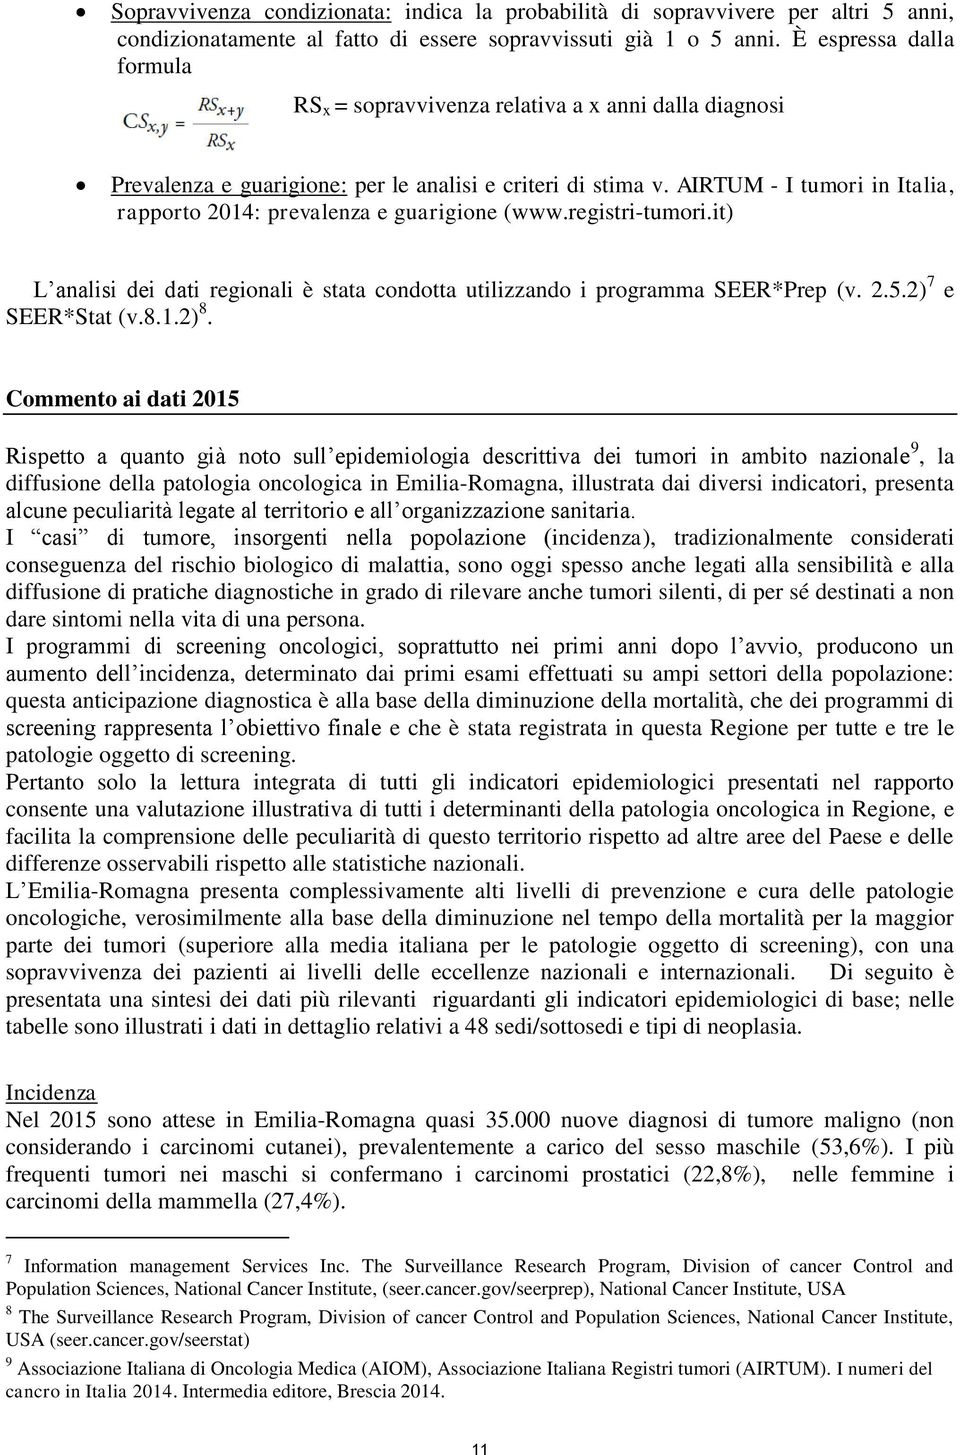 AIRTUM - I tumori in Italia, rapporto : prevalenza e guarigione (www.registri-tumori.it) L analisi dei dati regionali è stata condotta utilizzando i programma SEER*Prep (v...) 7 e SEER*Stat (v.8..) 8.